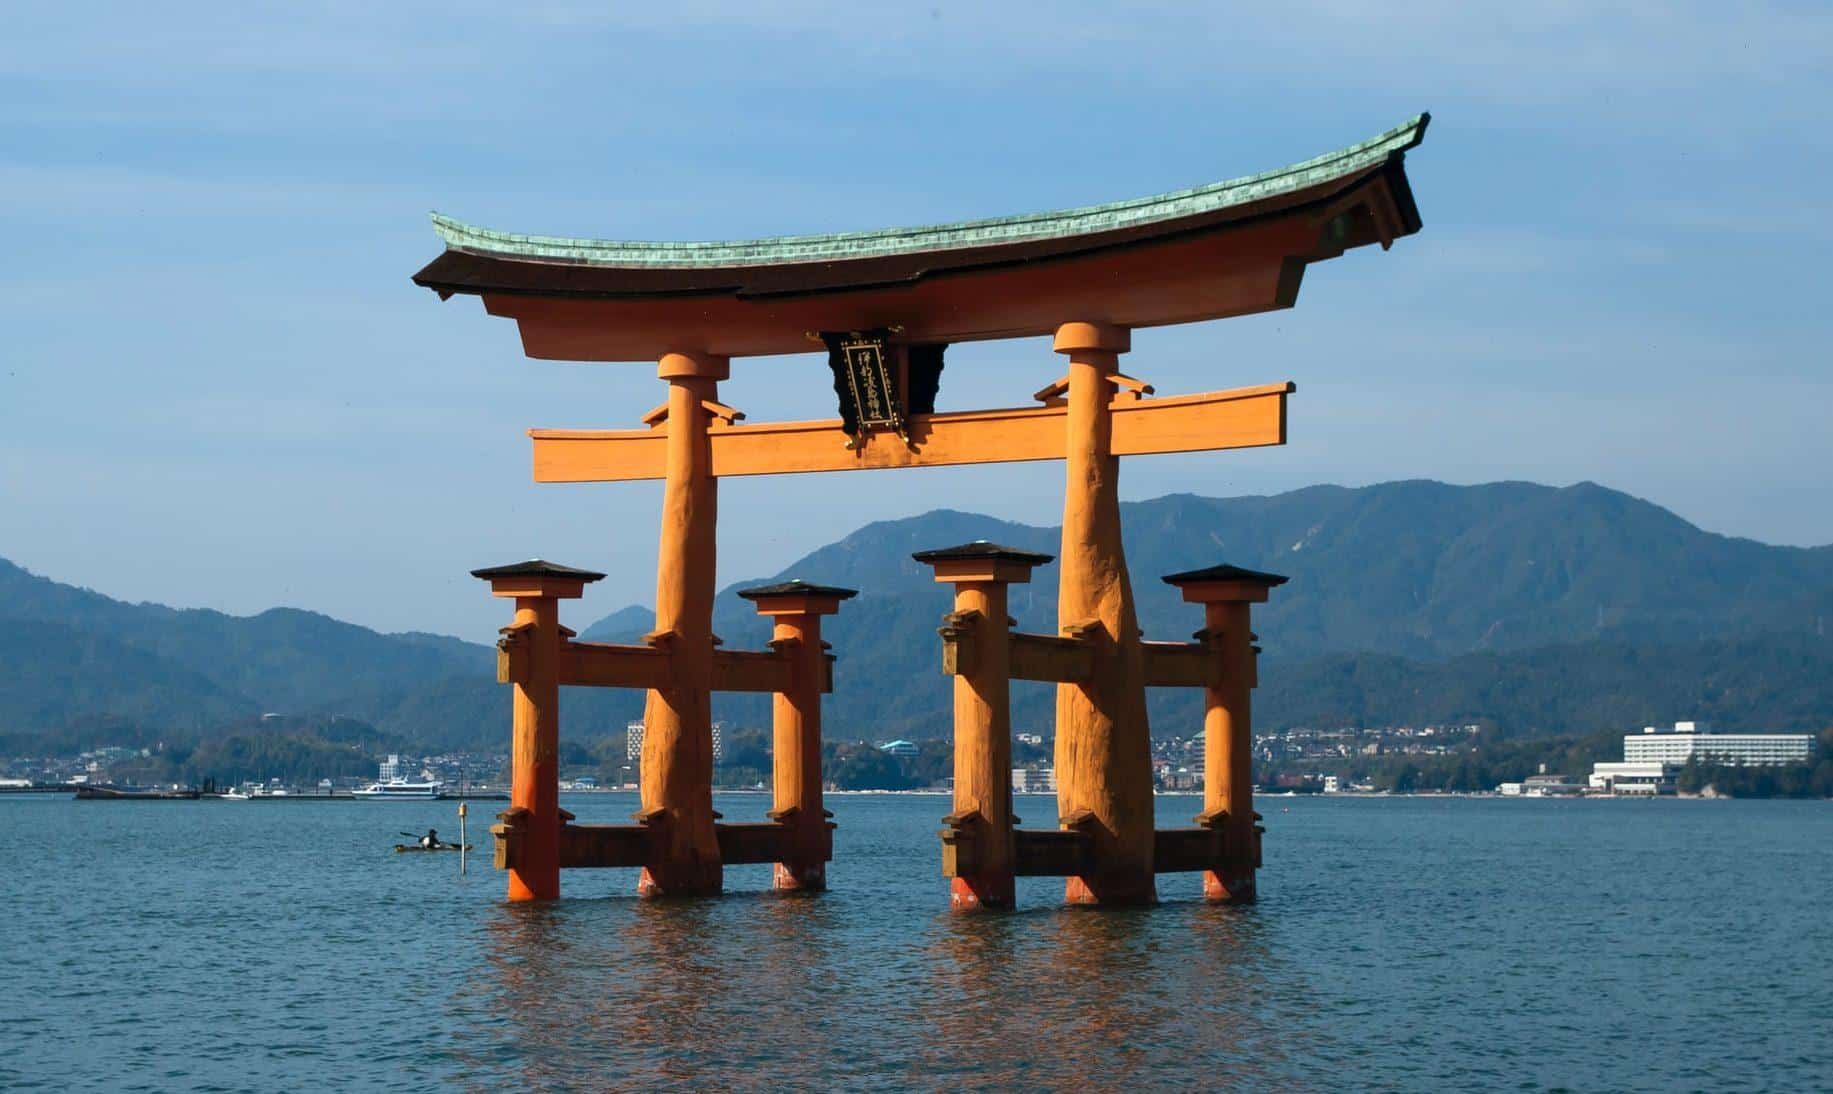 hiroshima itsukushima floating torii